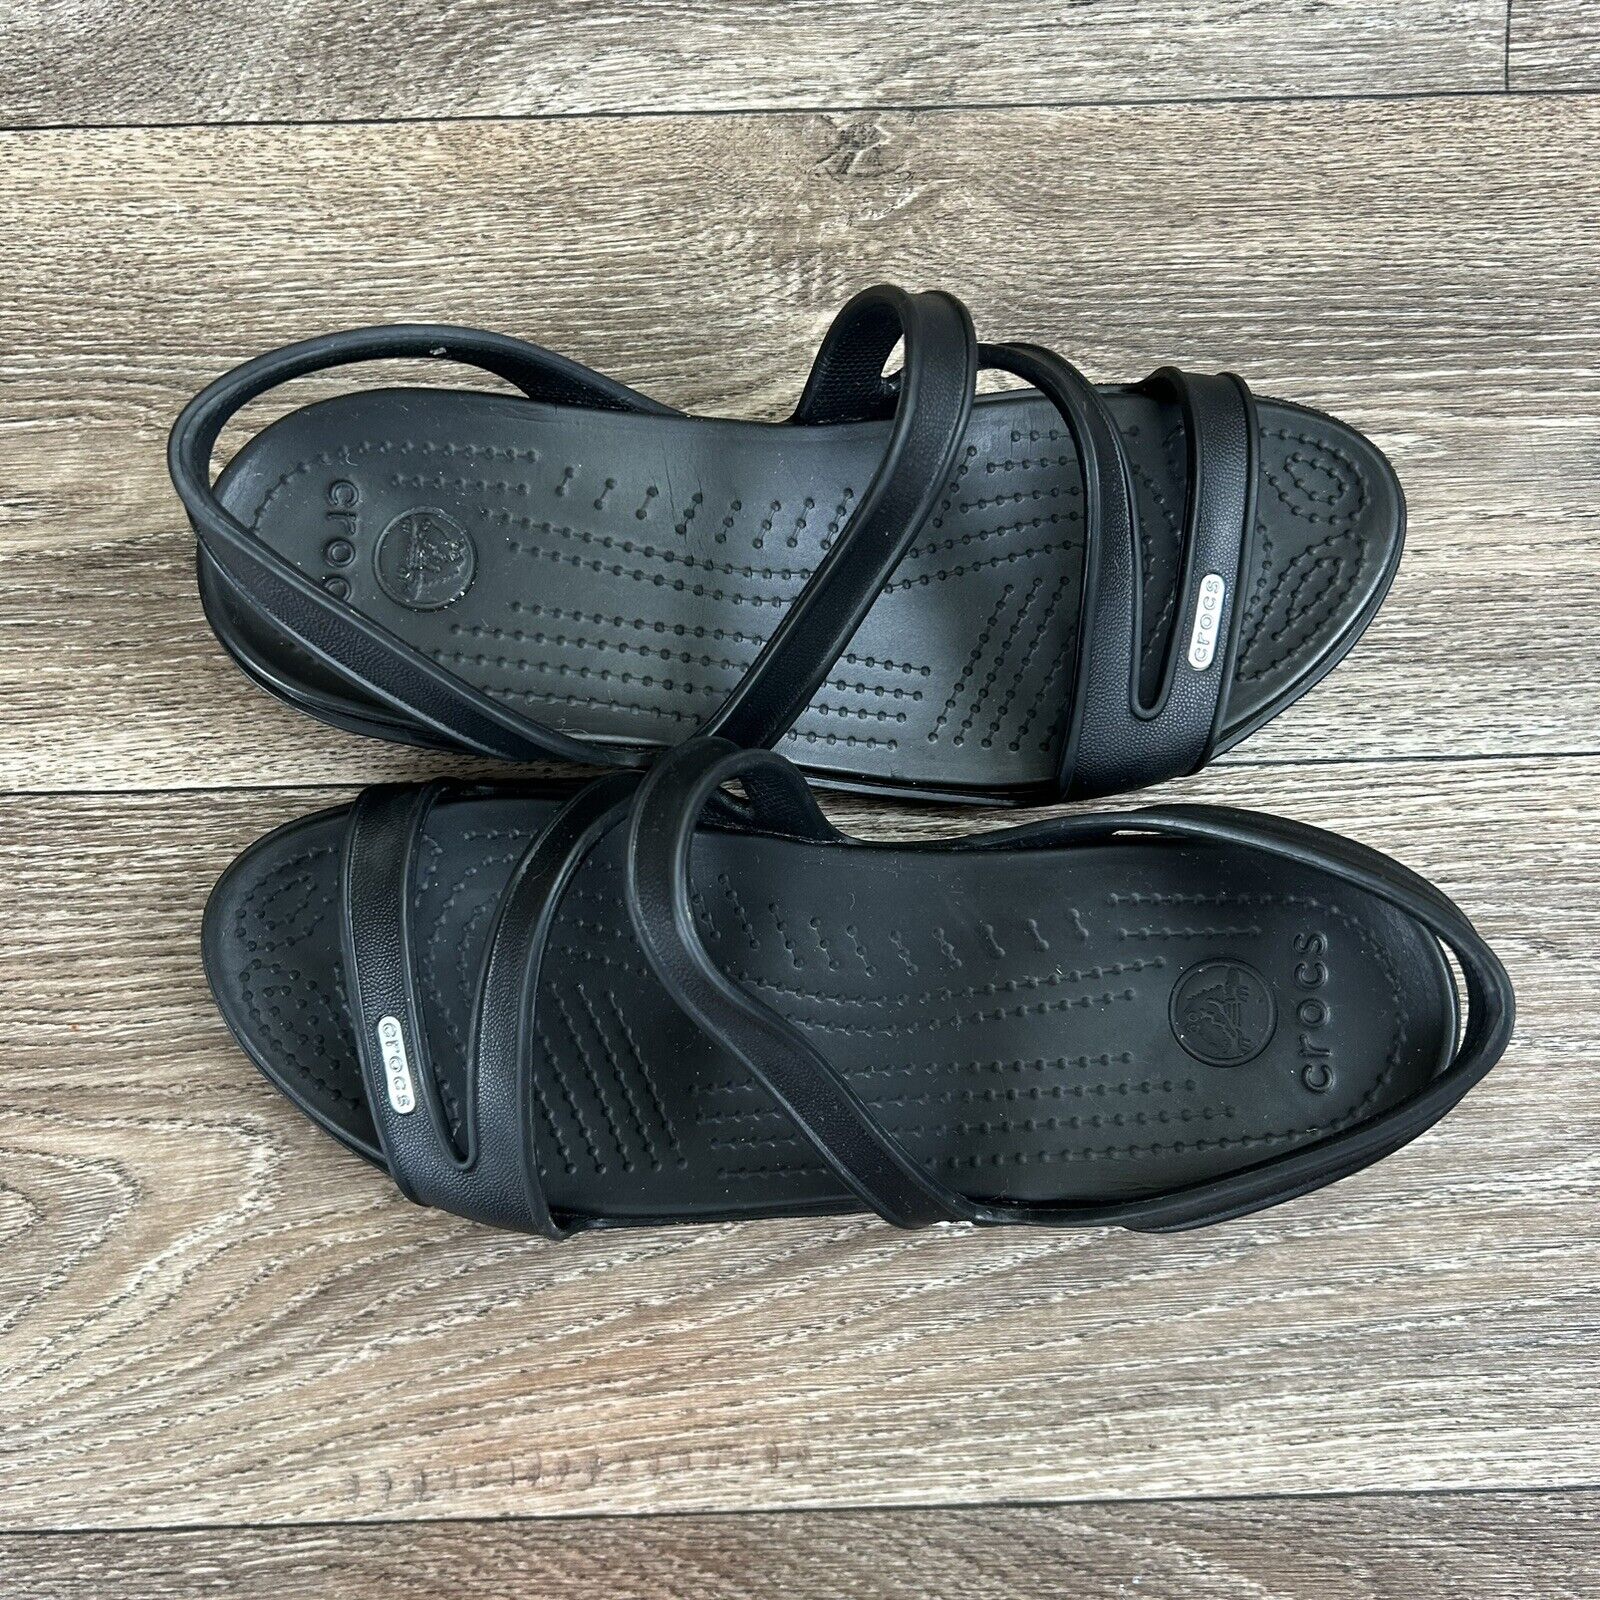 Crocs Women's Patricia Sandal Size 9 Black Low We… - image 5